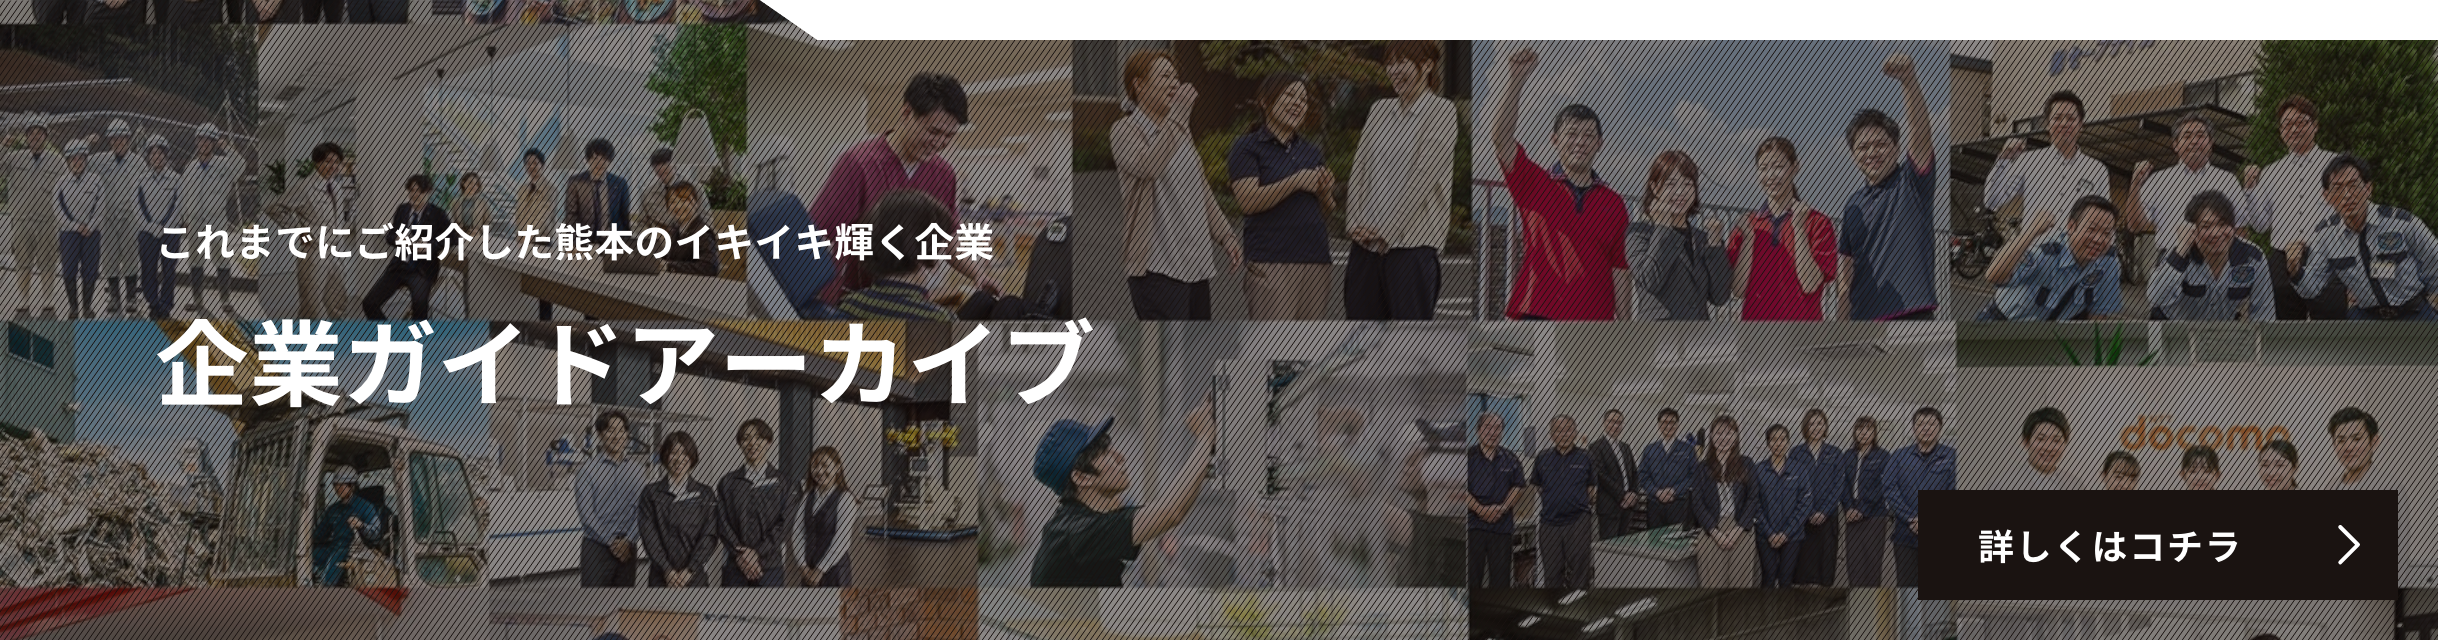 これまでにご紹介した熊本のイキイキ輝く企業 企業ガイドアーカイブ